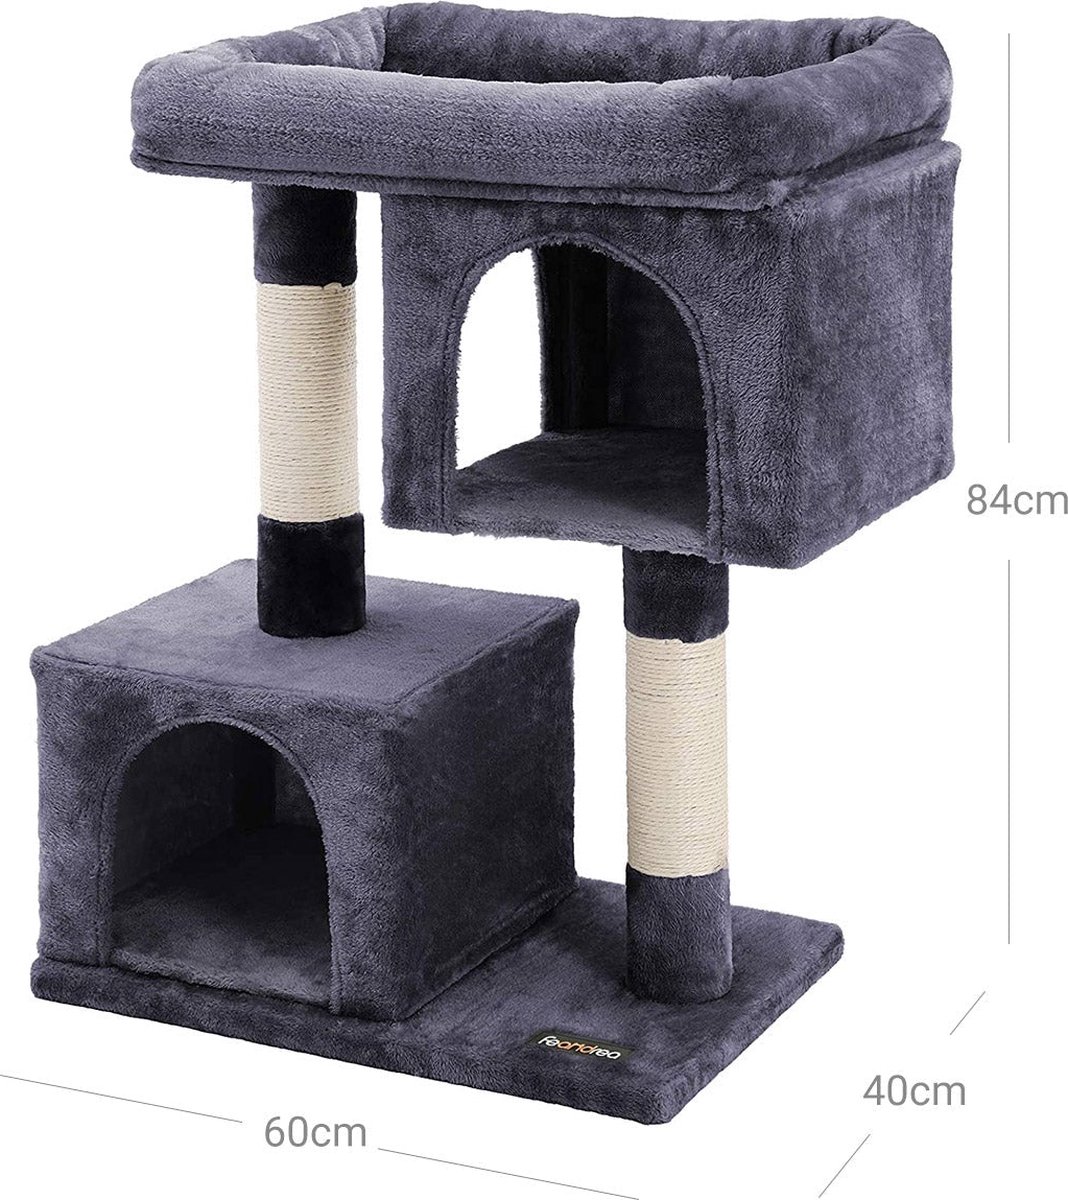 Kattenboom - Met groot platform - 2 pluche grotten - Speelhuisje - klimboom voor katten - Grey